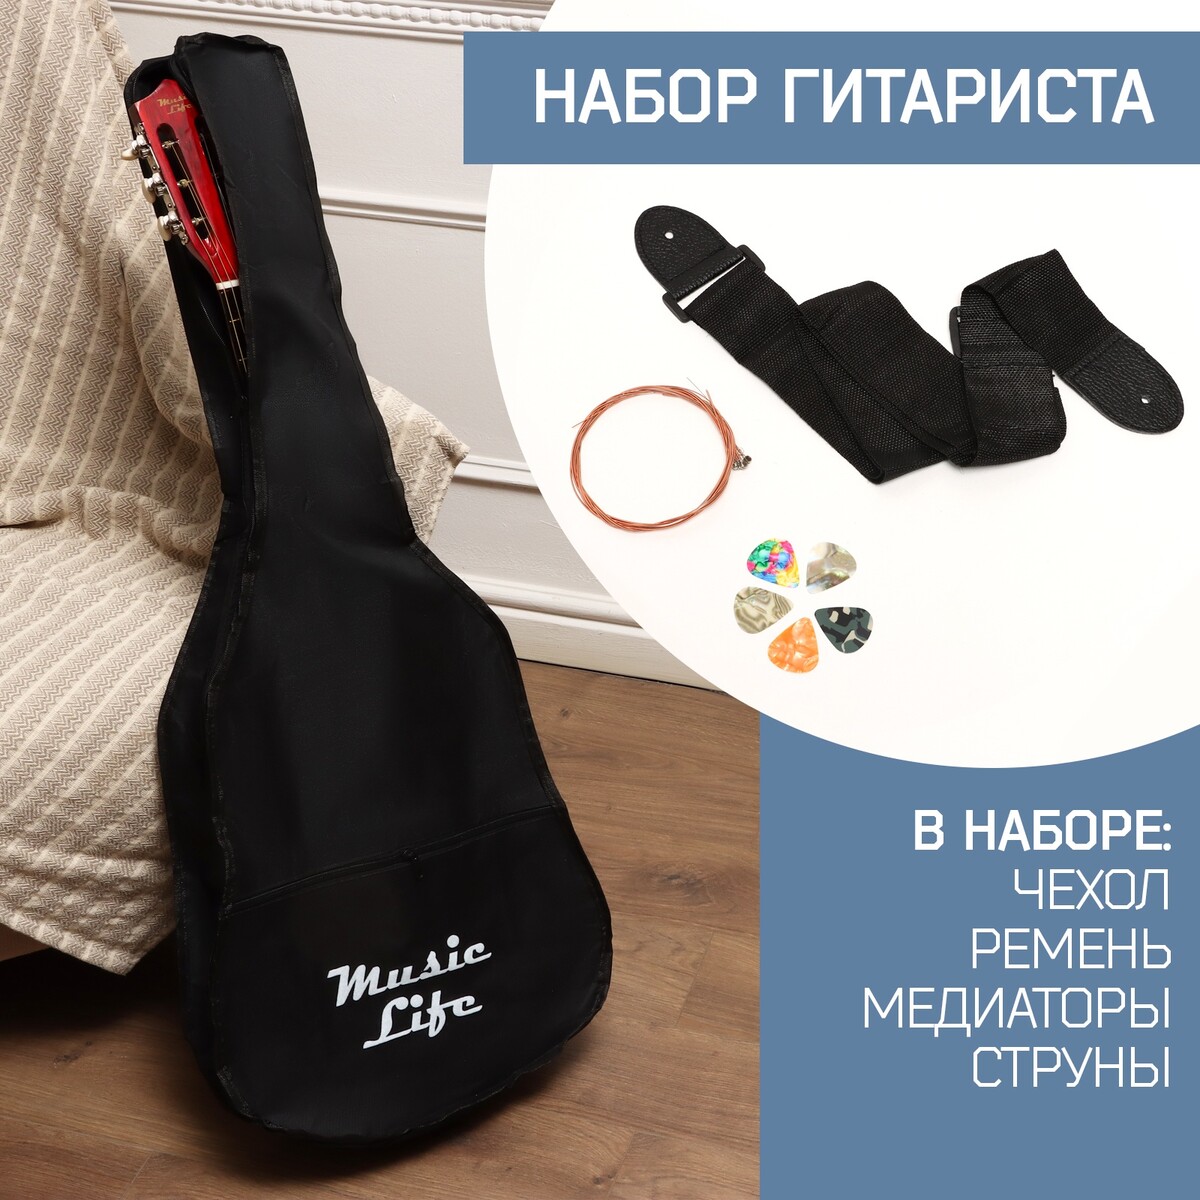 Набор аксессуаров для гитары music life: ремень, чехол 105х41 см, медиаторы 5 штук, струны чехол брелок для медиаторов music life